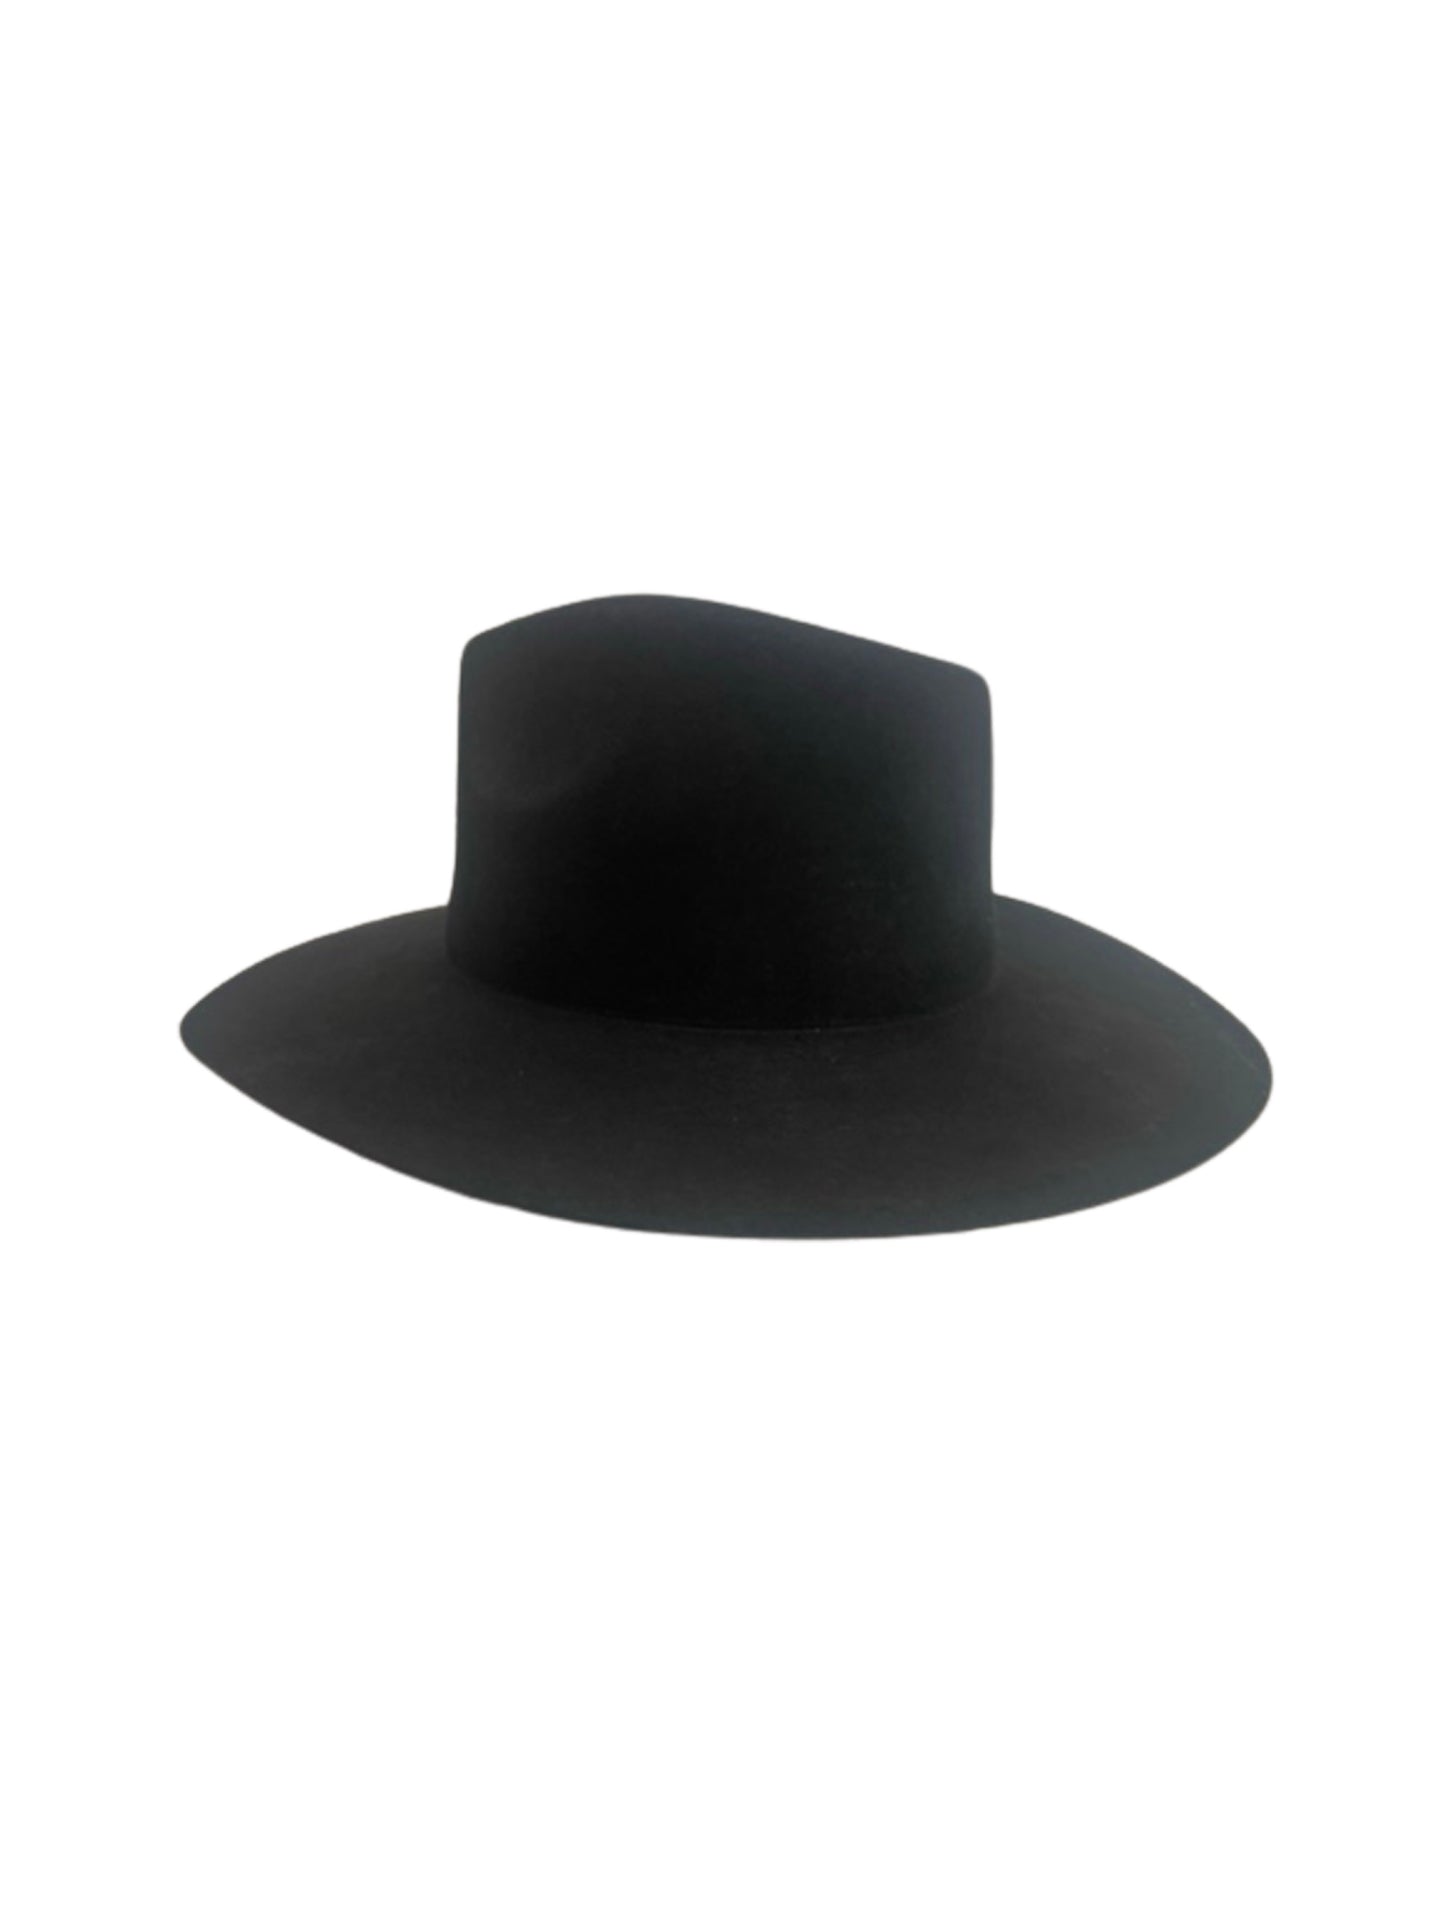 rancher hat black side